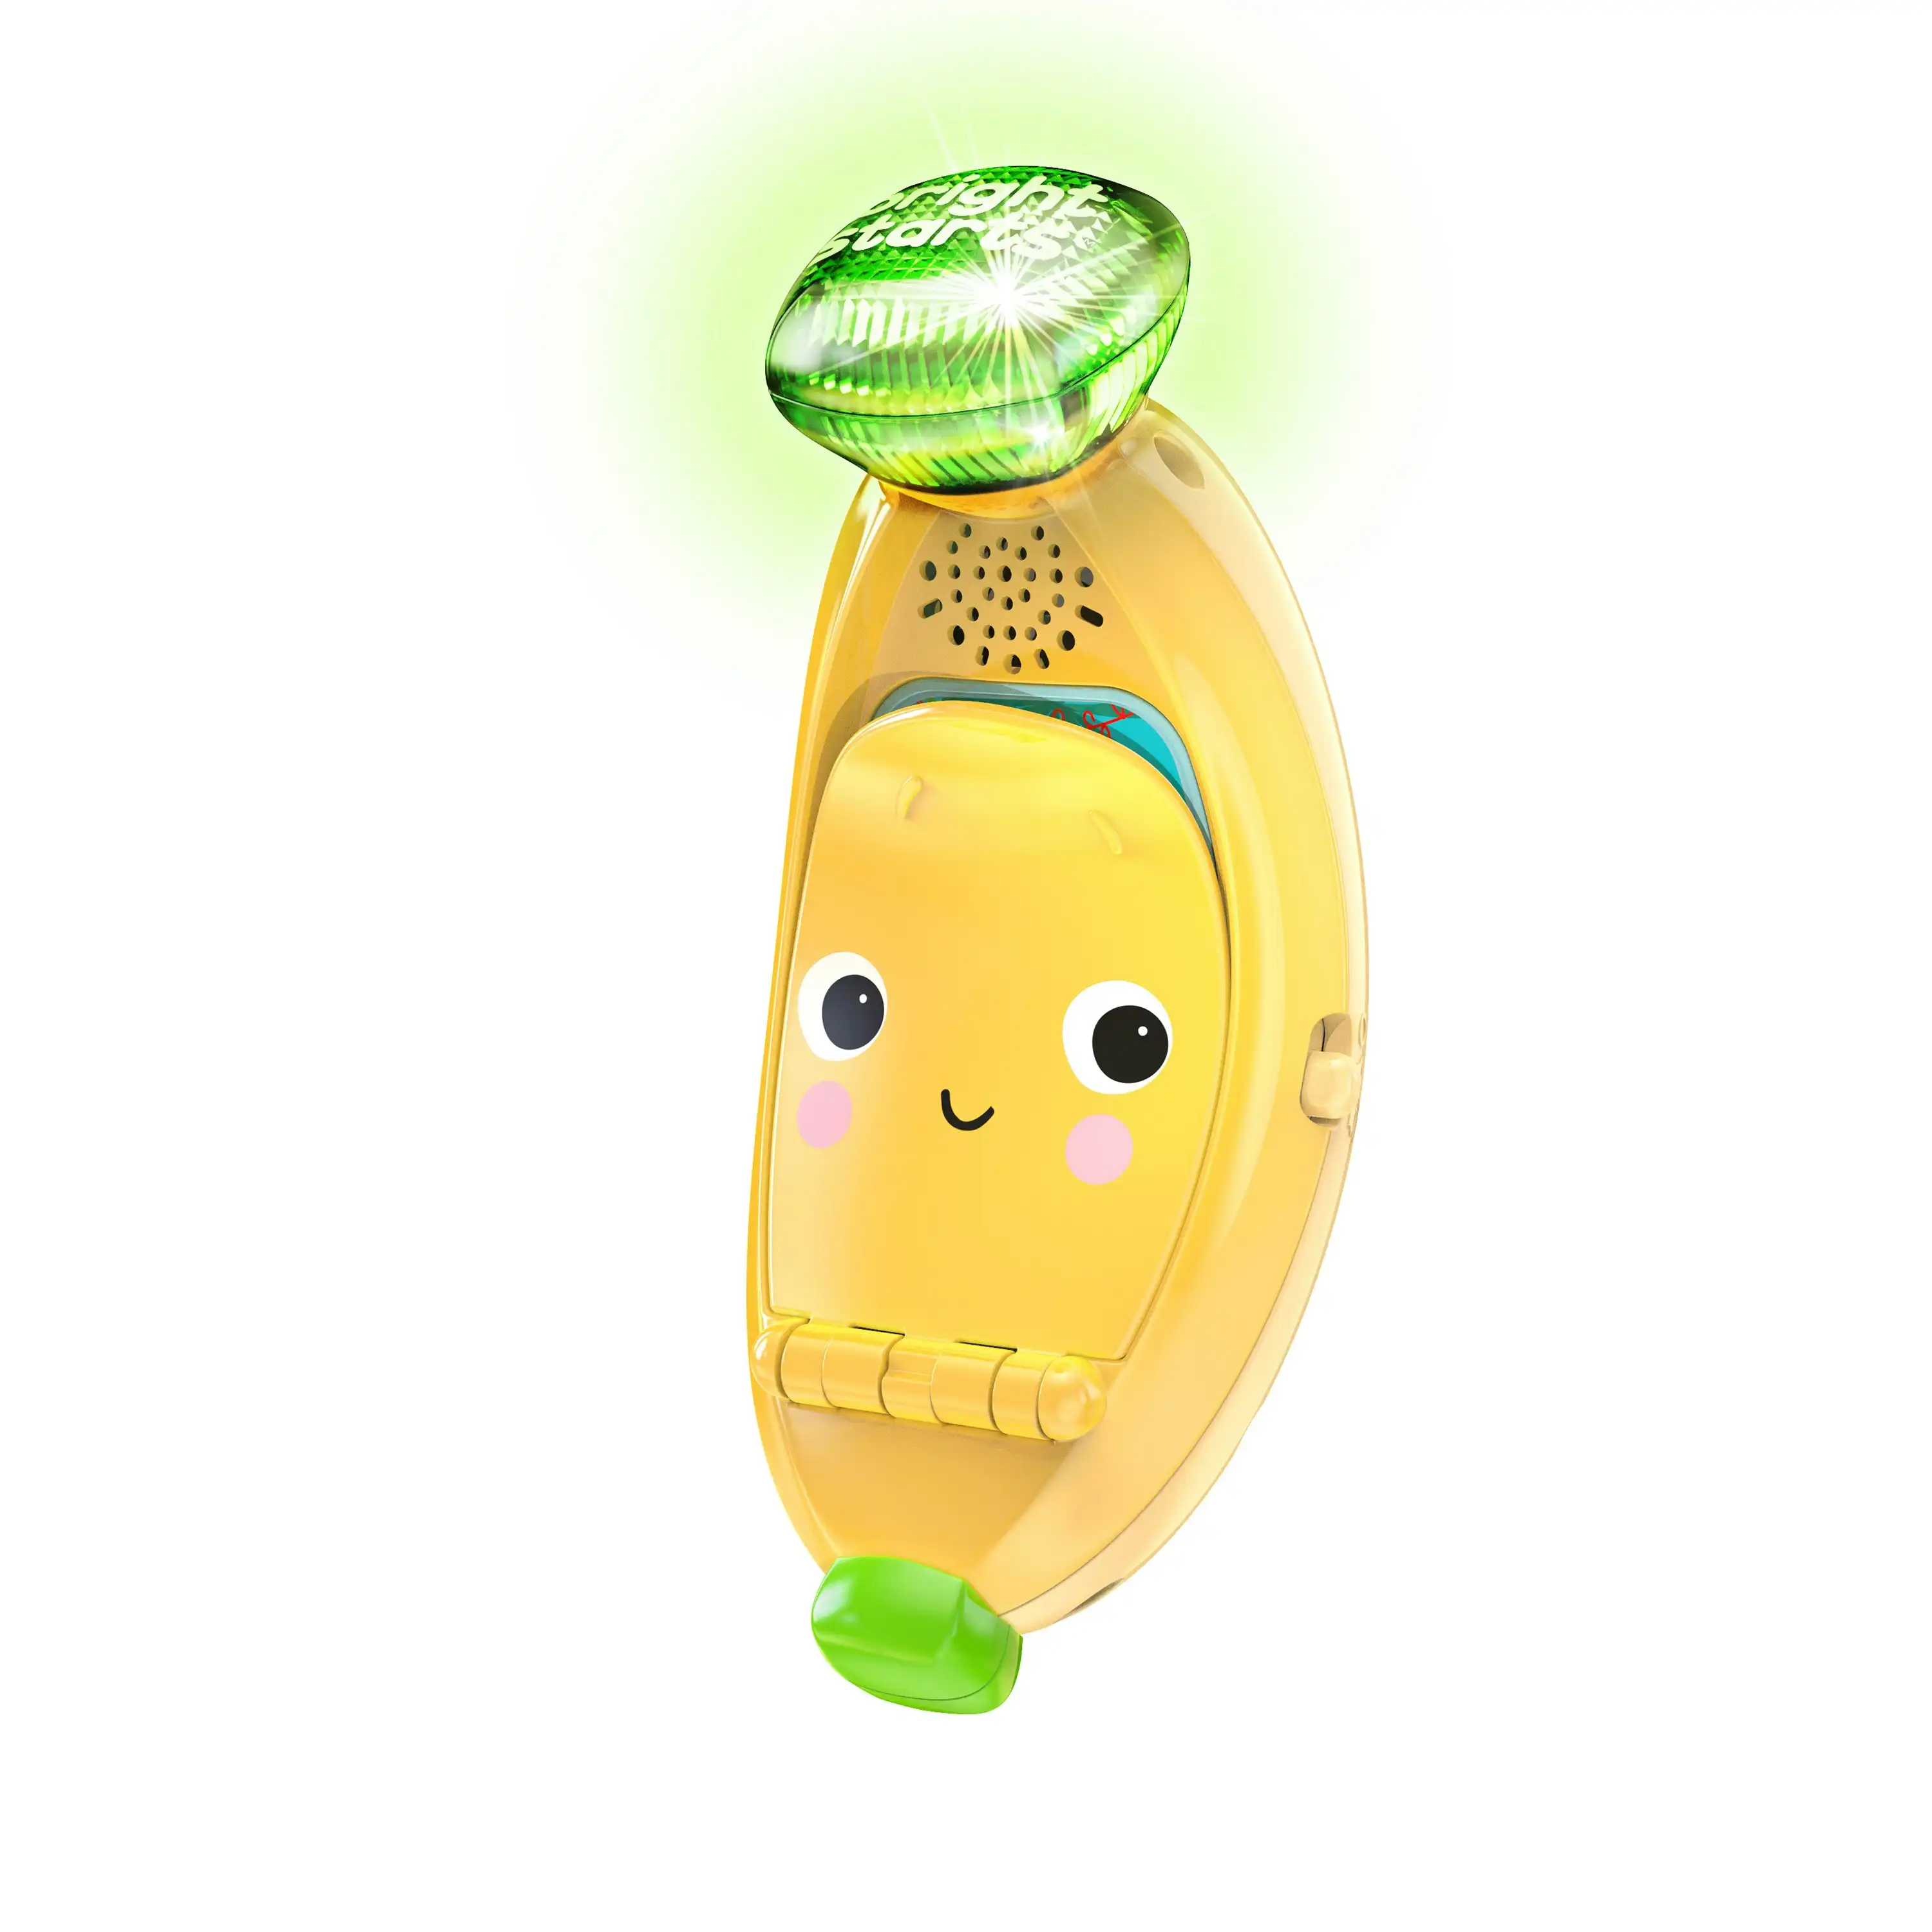 Babblin' Banana Ring & Sing Activity Toy